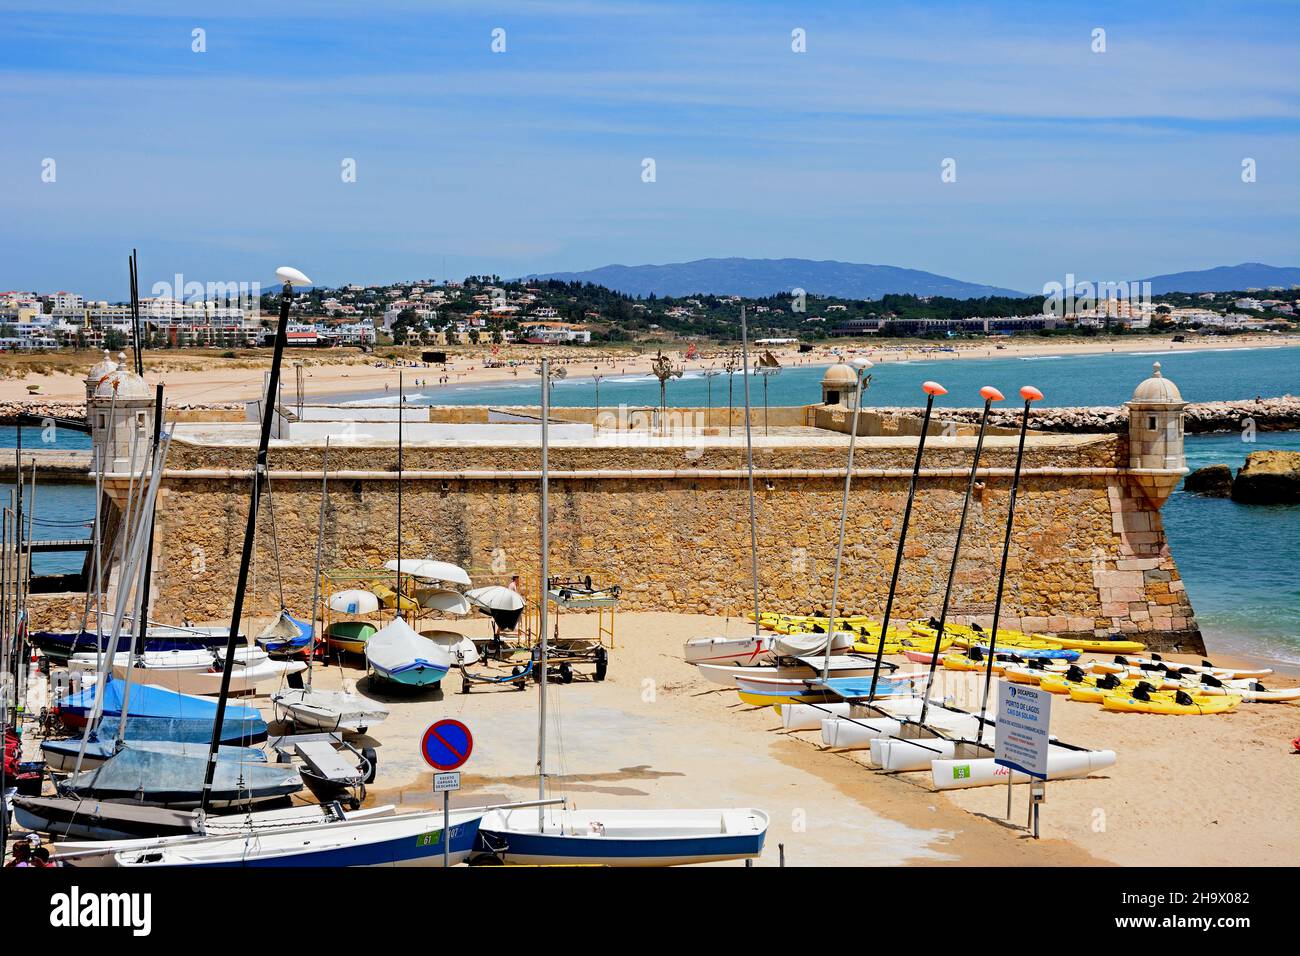 La vista de la elevada fortaleza Ponta da Bandeira con barcos en primer plano y vistas a la playa, Lagos, Algarve, Portugal, Europa. Foto de stock